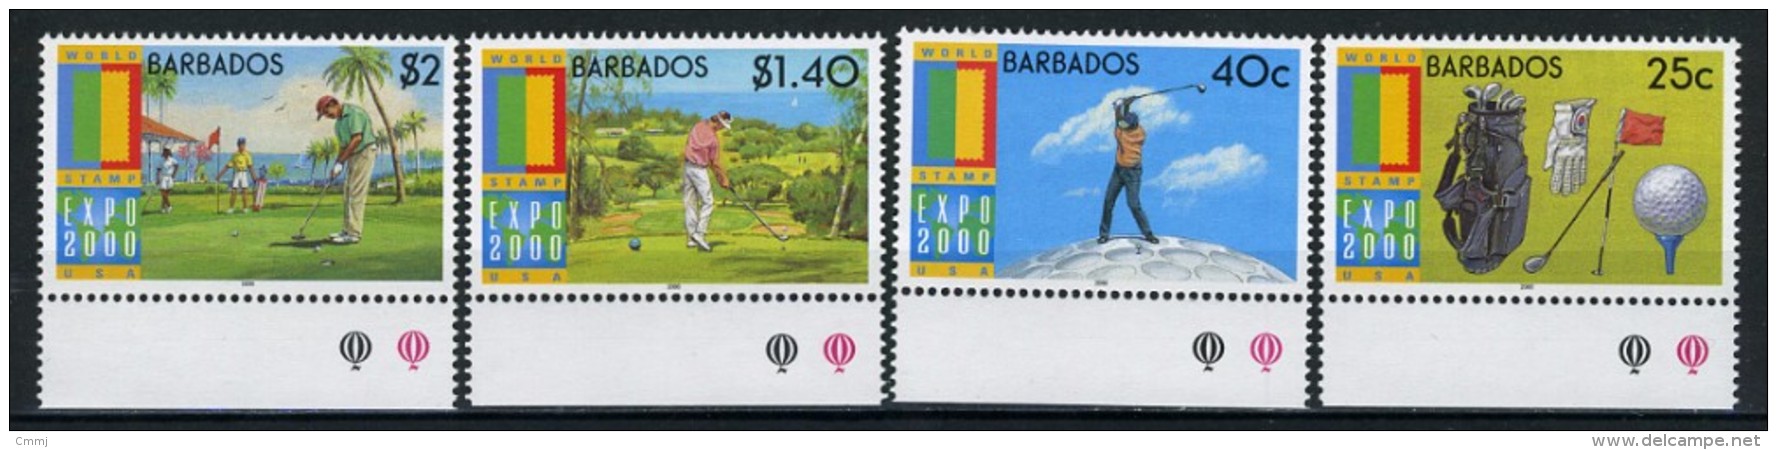 2000 -  BARBADOS  - Catg. Mi.  989/992 - NH - (G-EA - 14) - Barbados (1966-...)